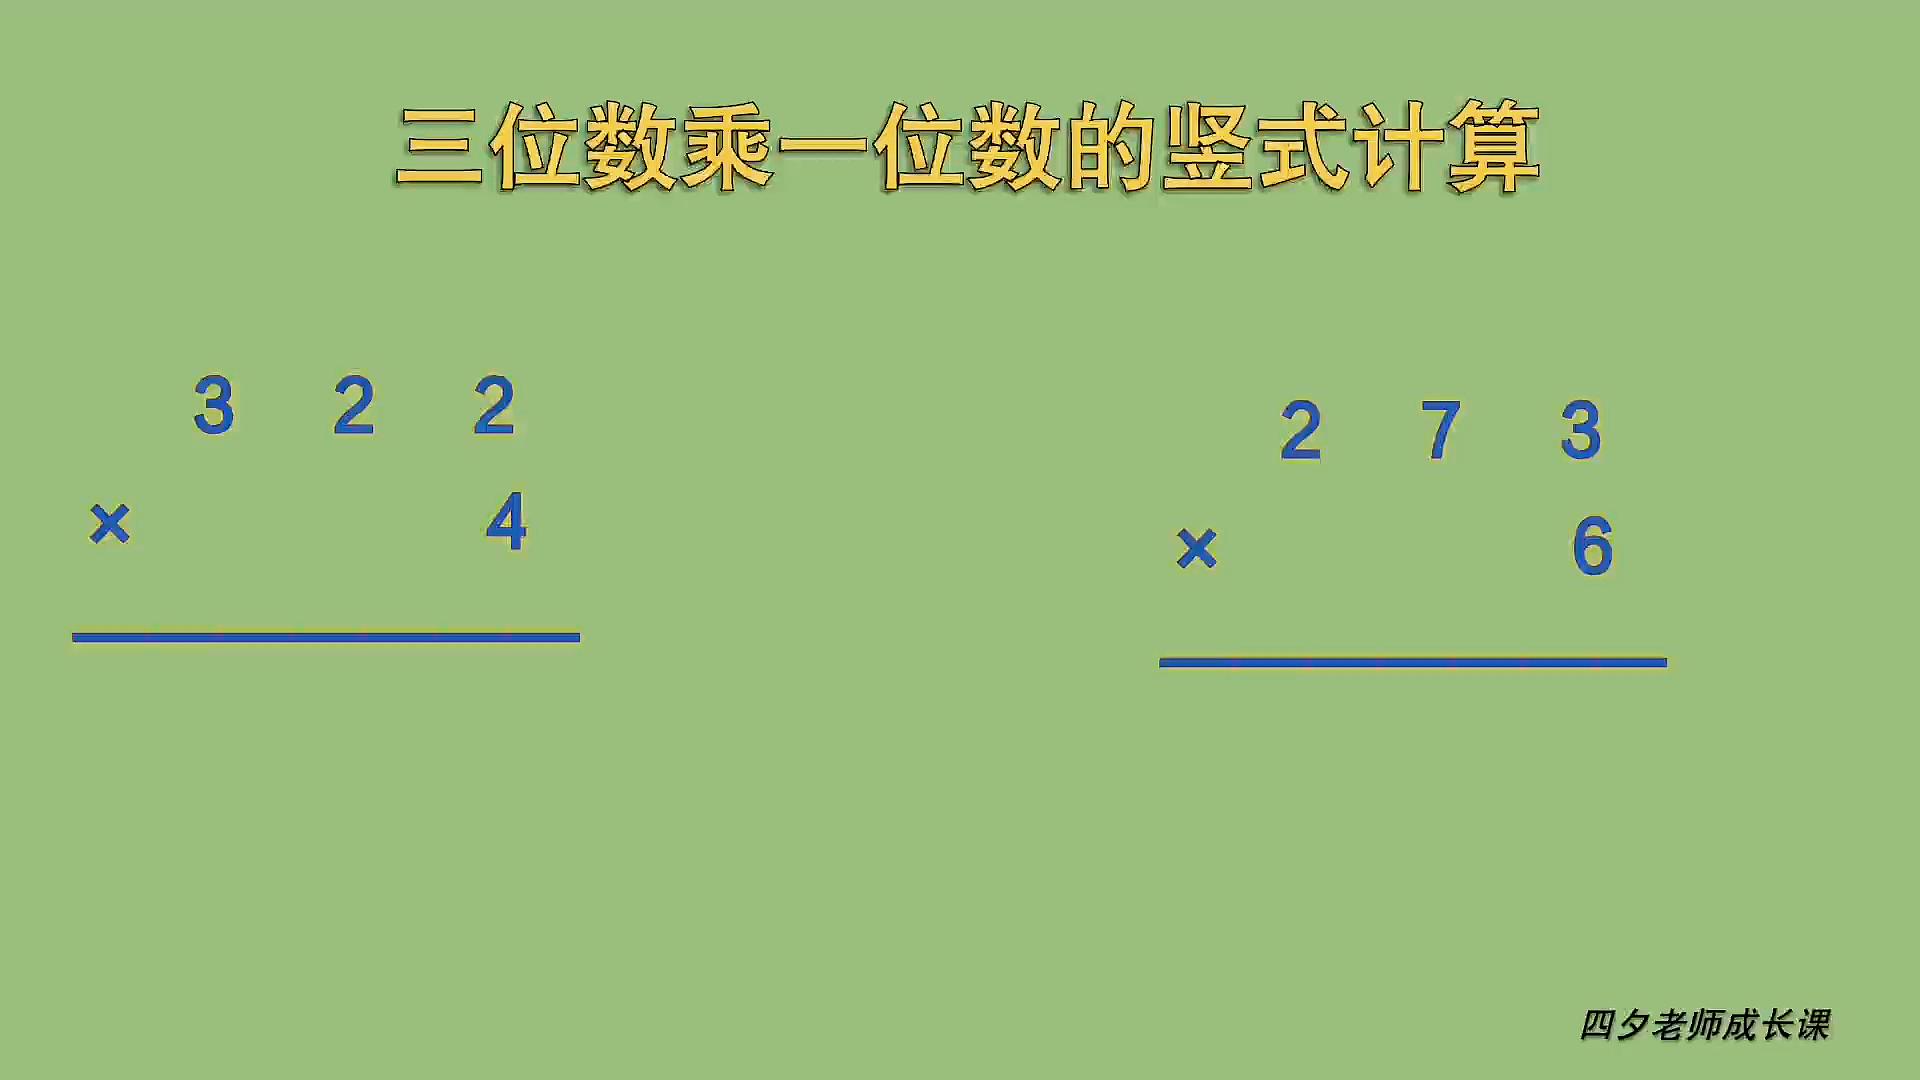 [图]三年级数学:三位数乘一位数的竖式计算,进位1次,连续进位